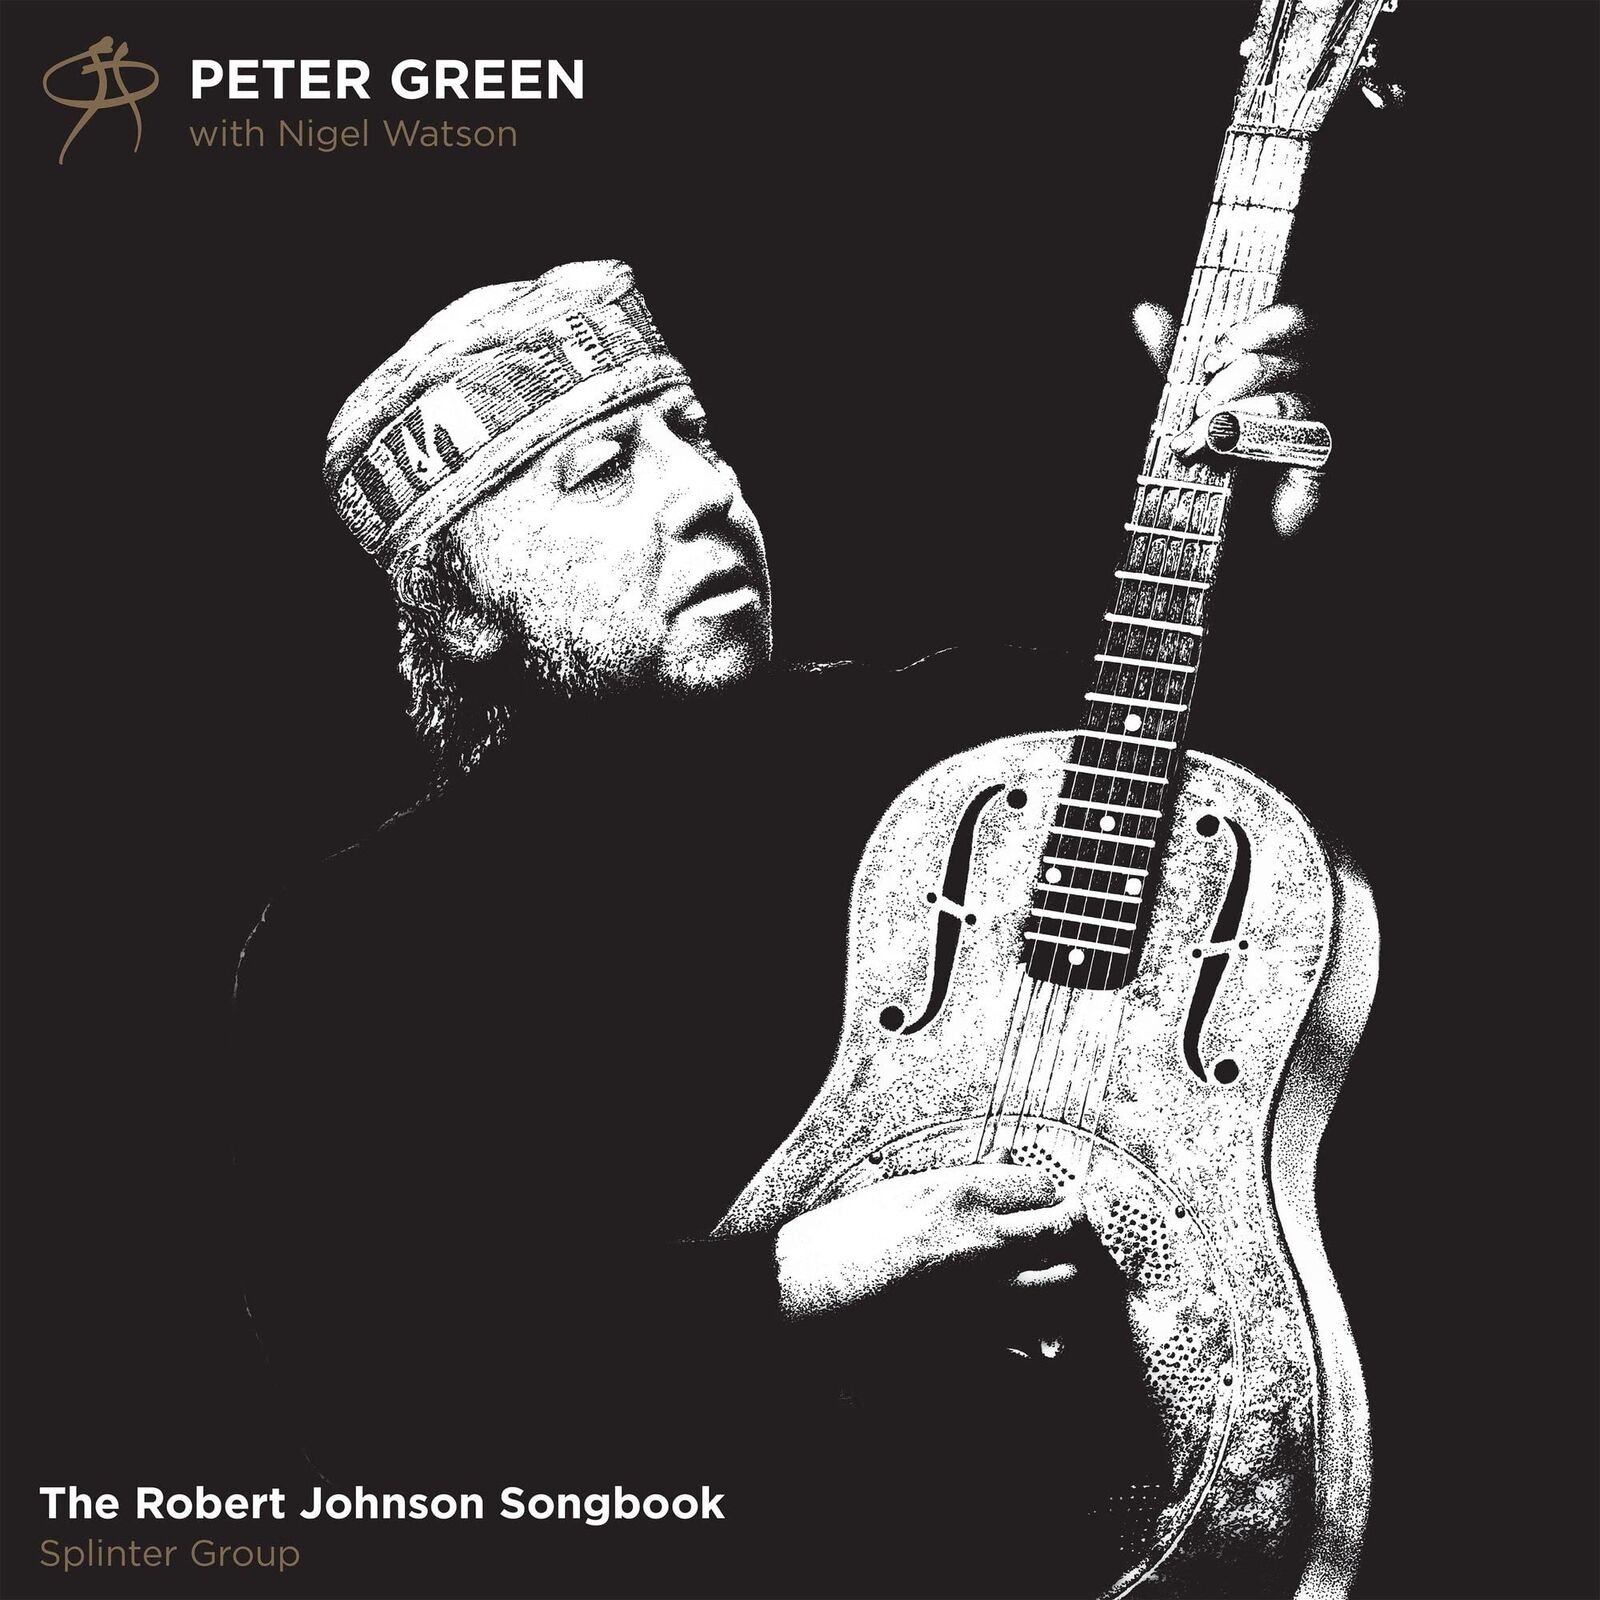 A636551807319 Peter Green Splinter Group - The Robert Johnson Songbook 180 Gram